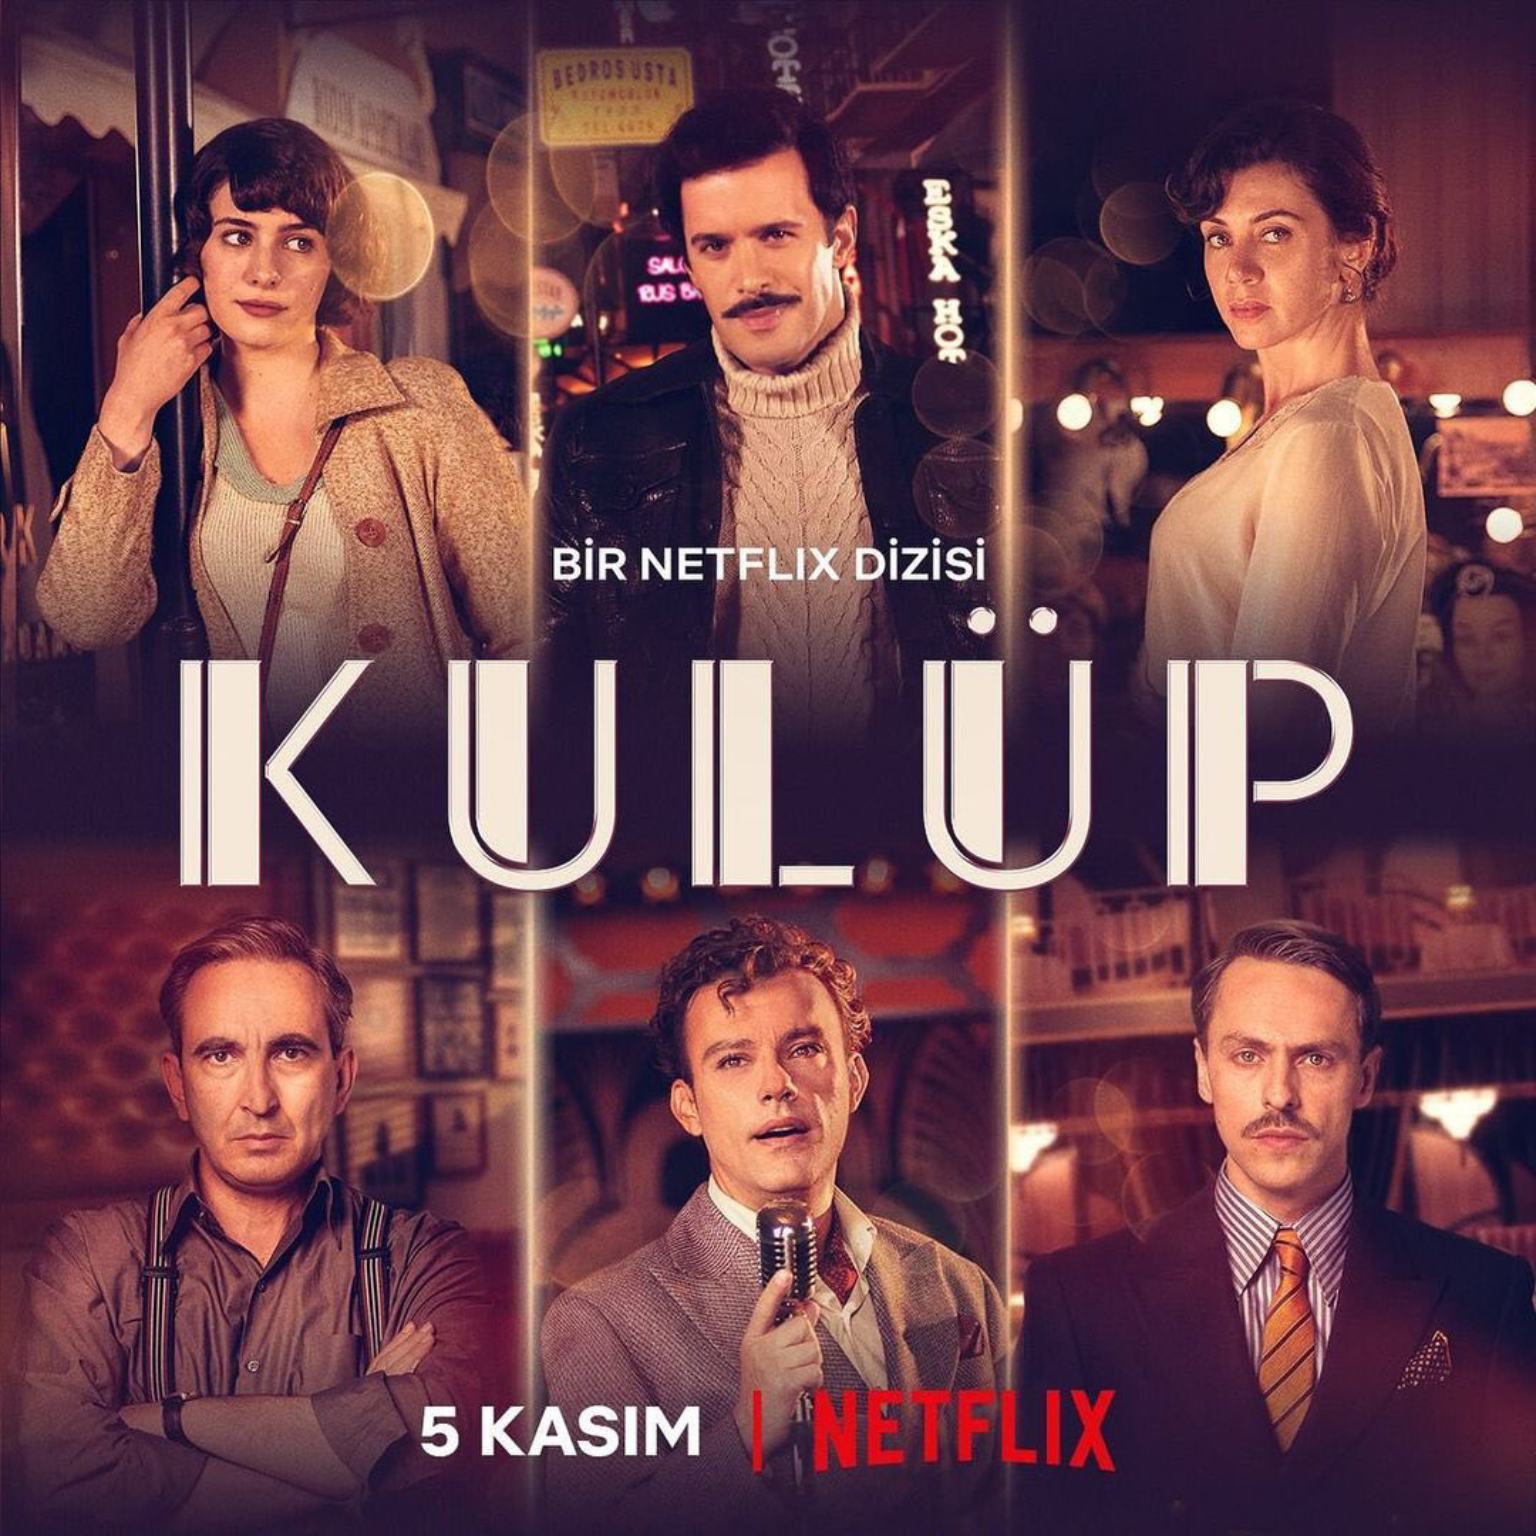 圖 愛在俱樂部 Kulüp (雷) Netflix 土耳其時代劇